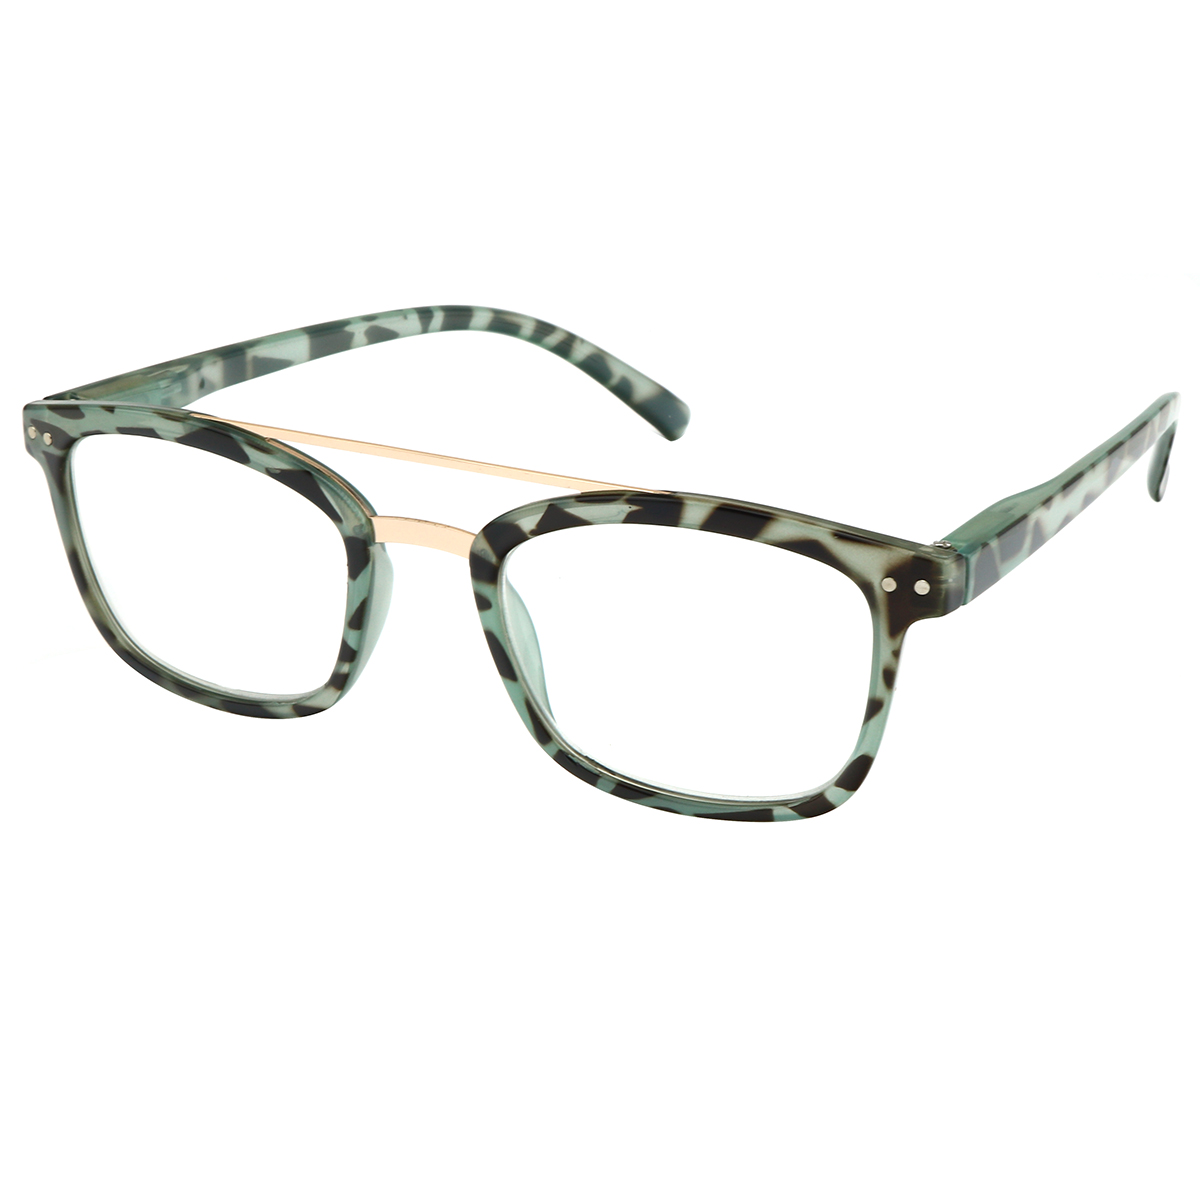 Penn - Aviator Green-Tortoiseshell Reading Glasses for Women